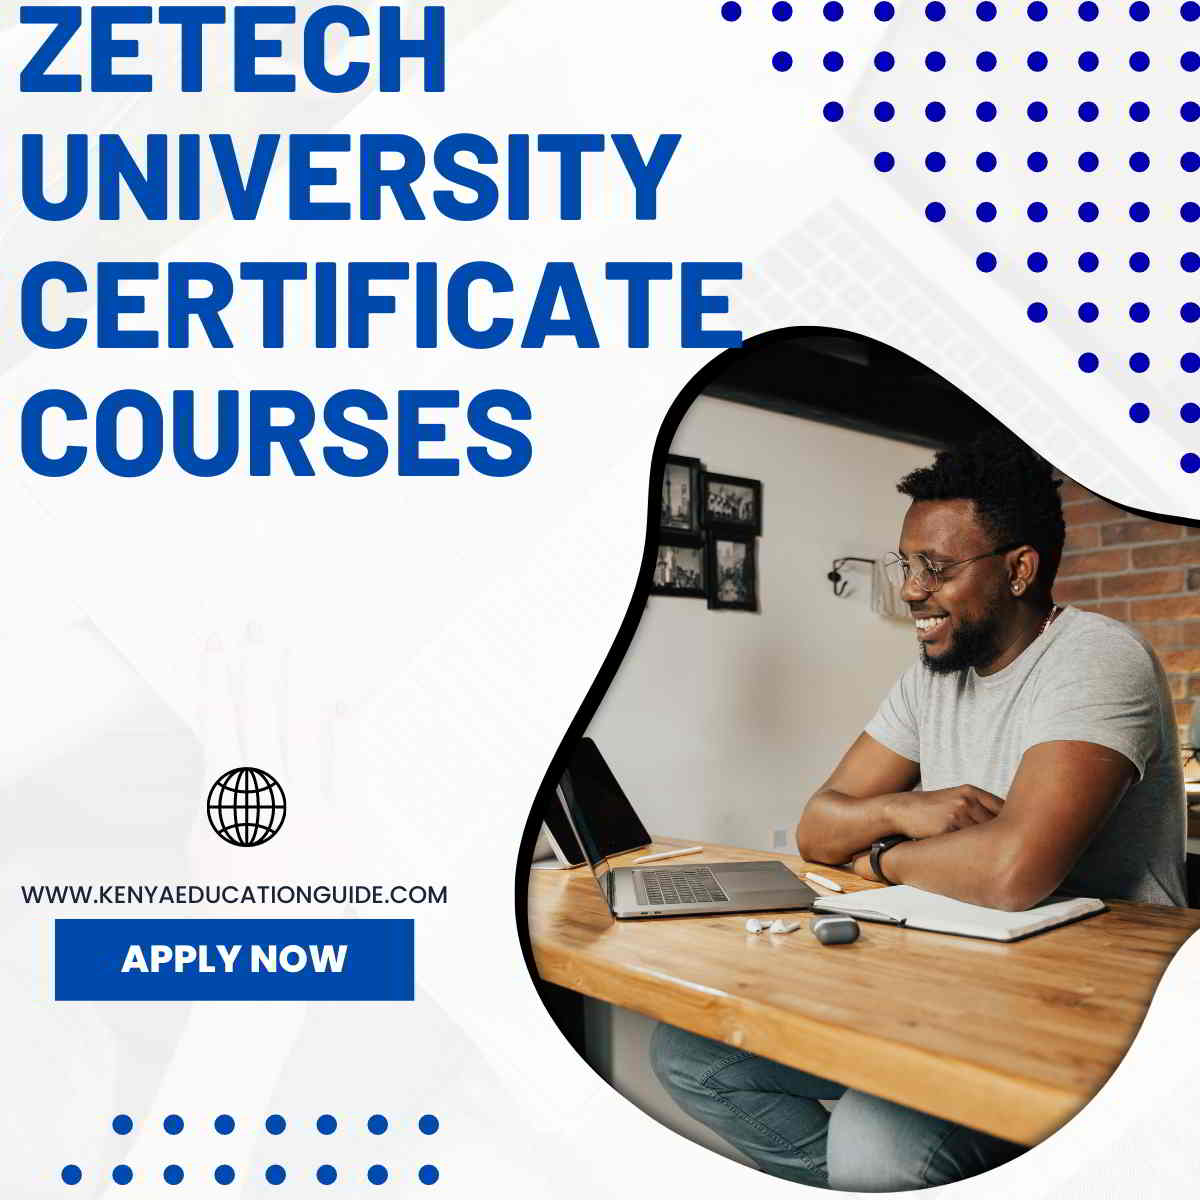 Zetech University certificate courses